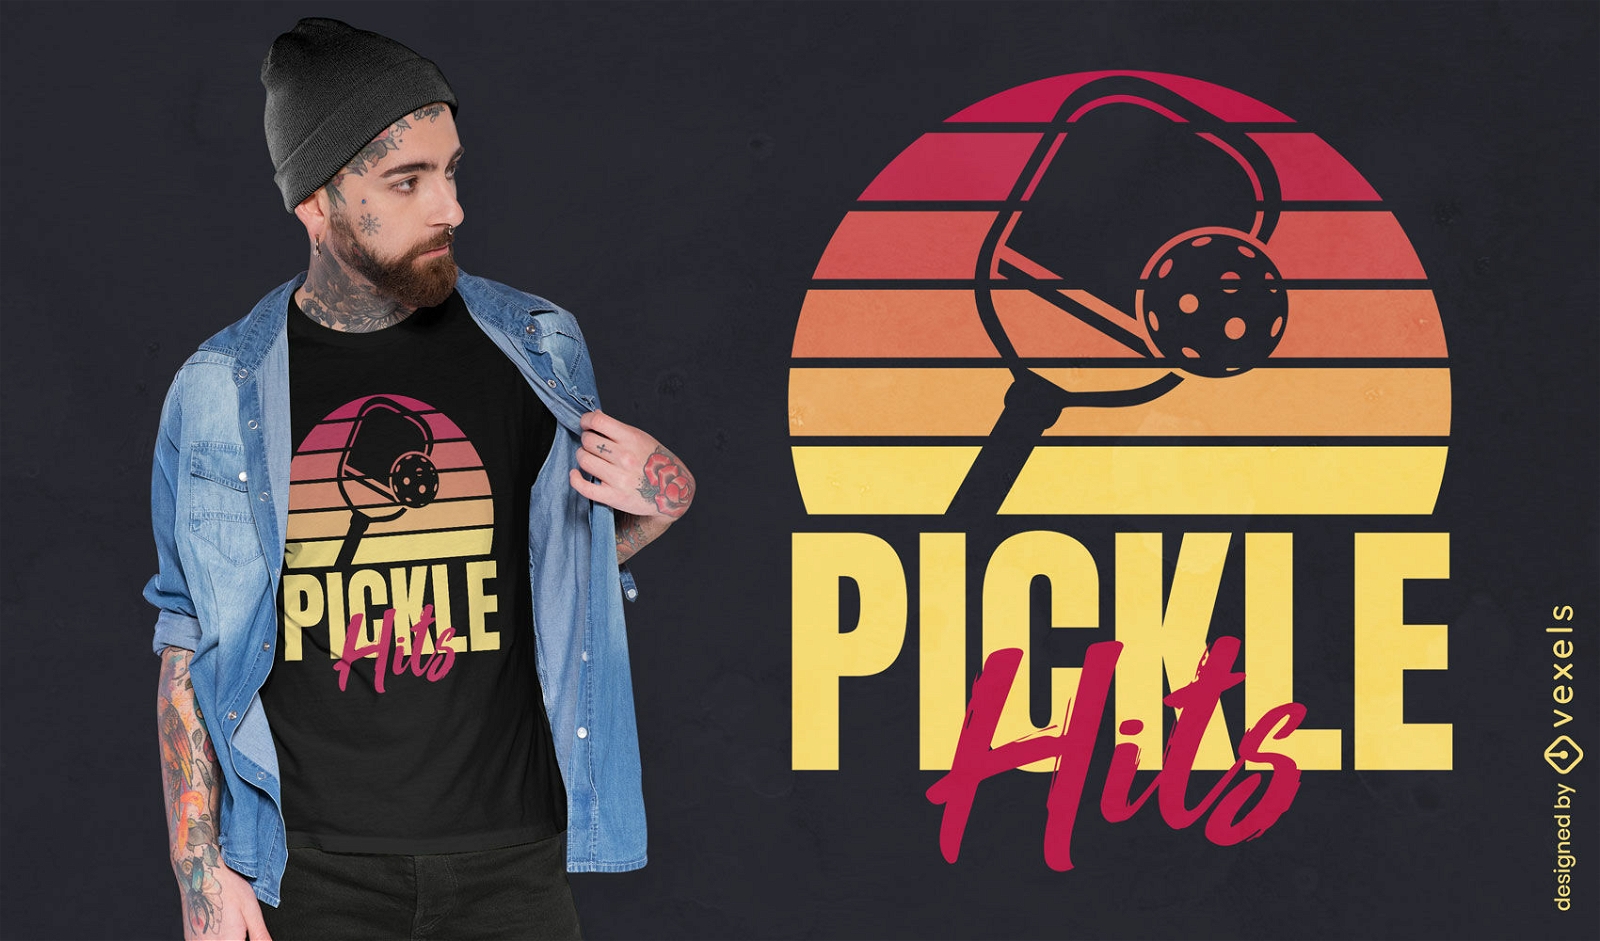 Pickle golpea el diseño de camiseta.